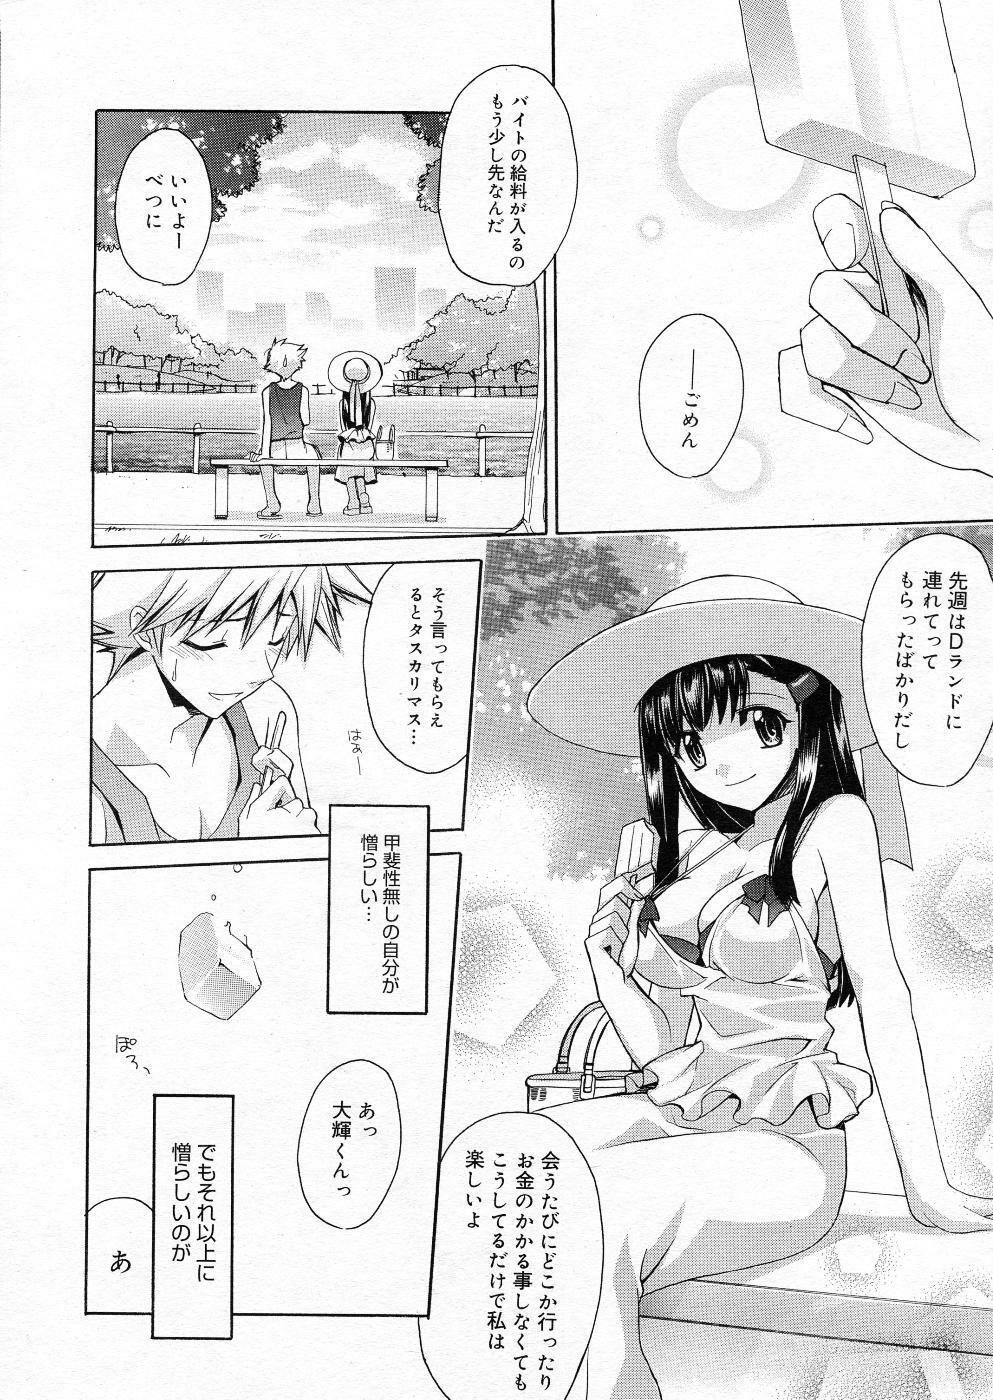 Manga Bangaichi 2005-11 page 21 full